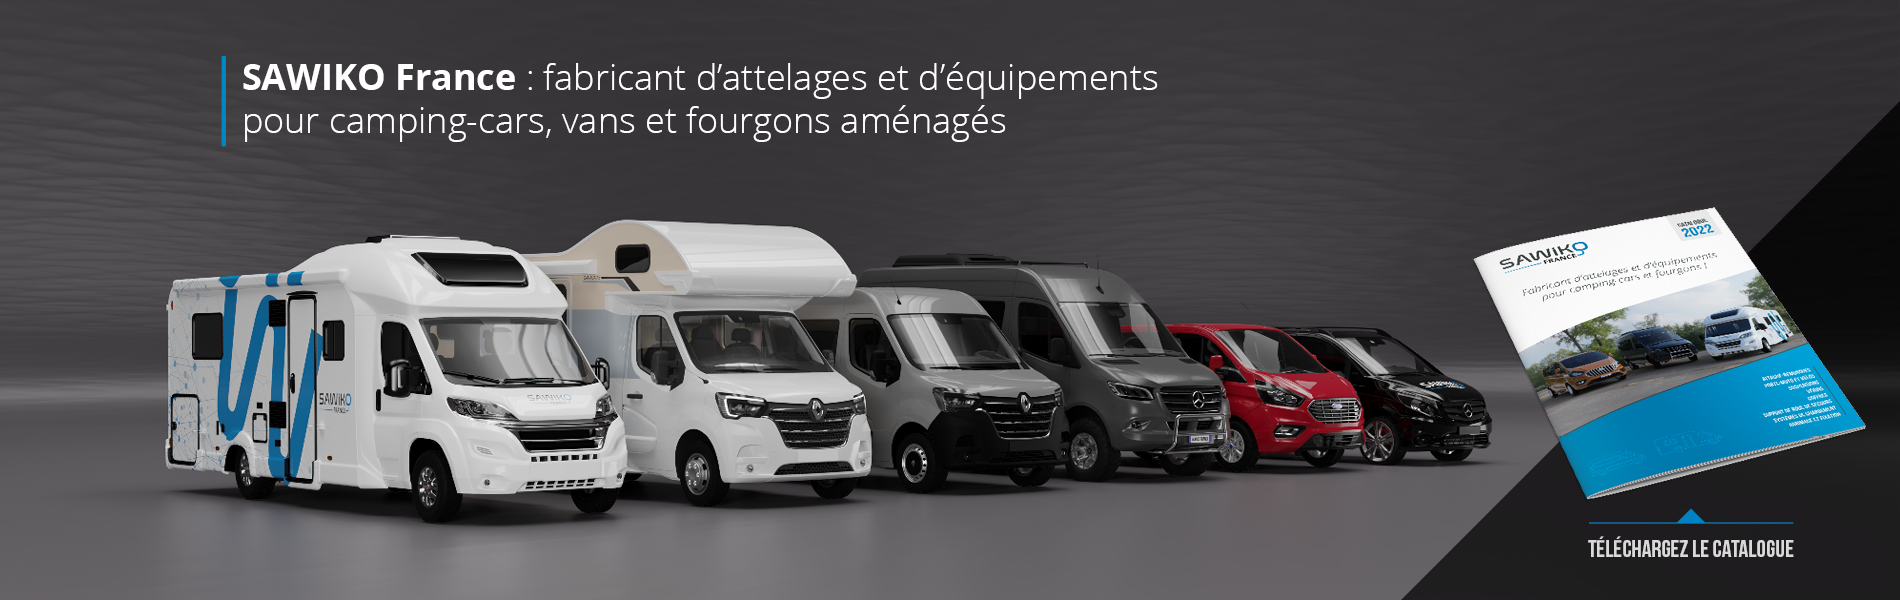 SAWIKO France : fabricant d’attelages et d’équipements pour camping-cars, vans et fourgons aménagés